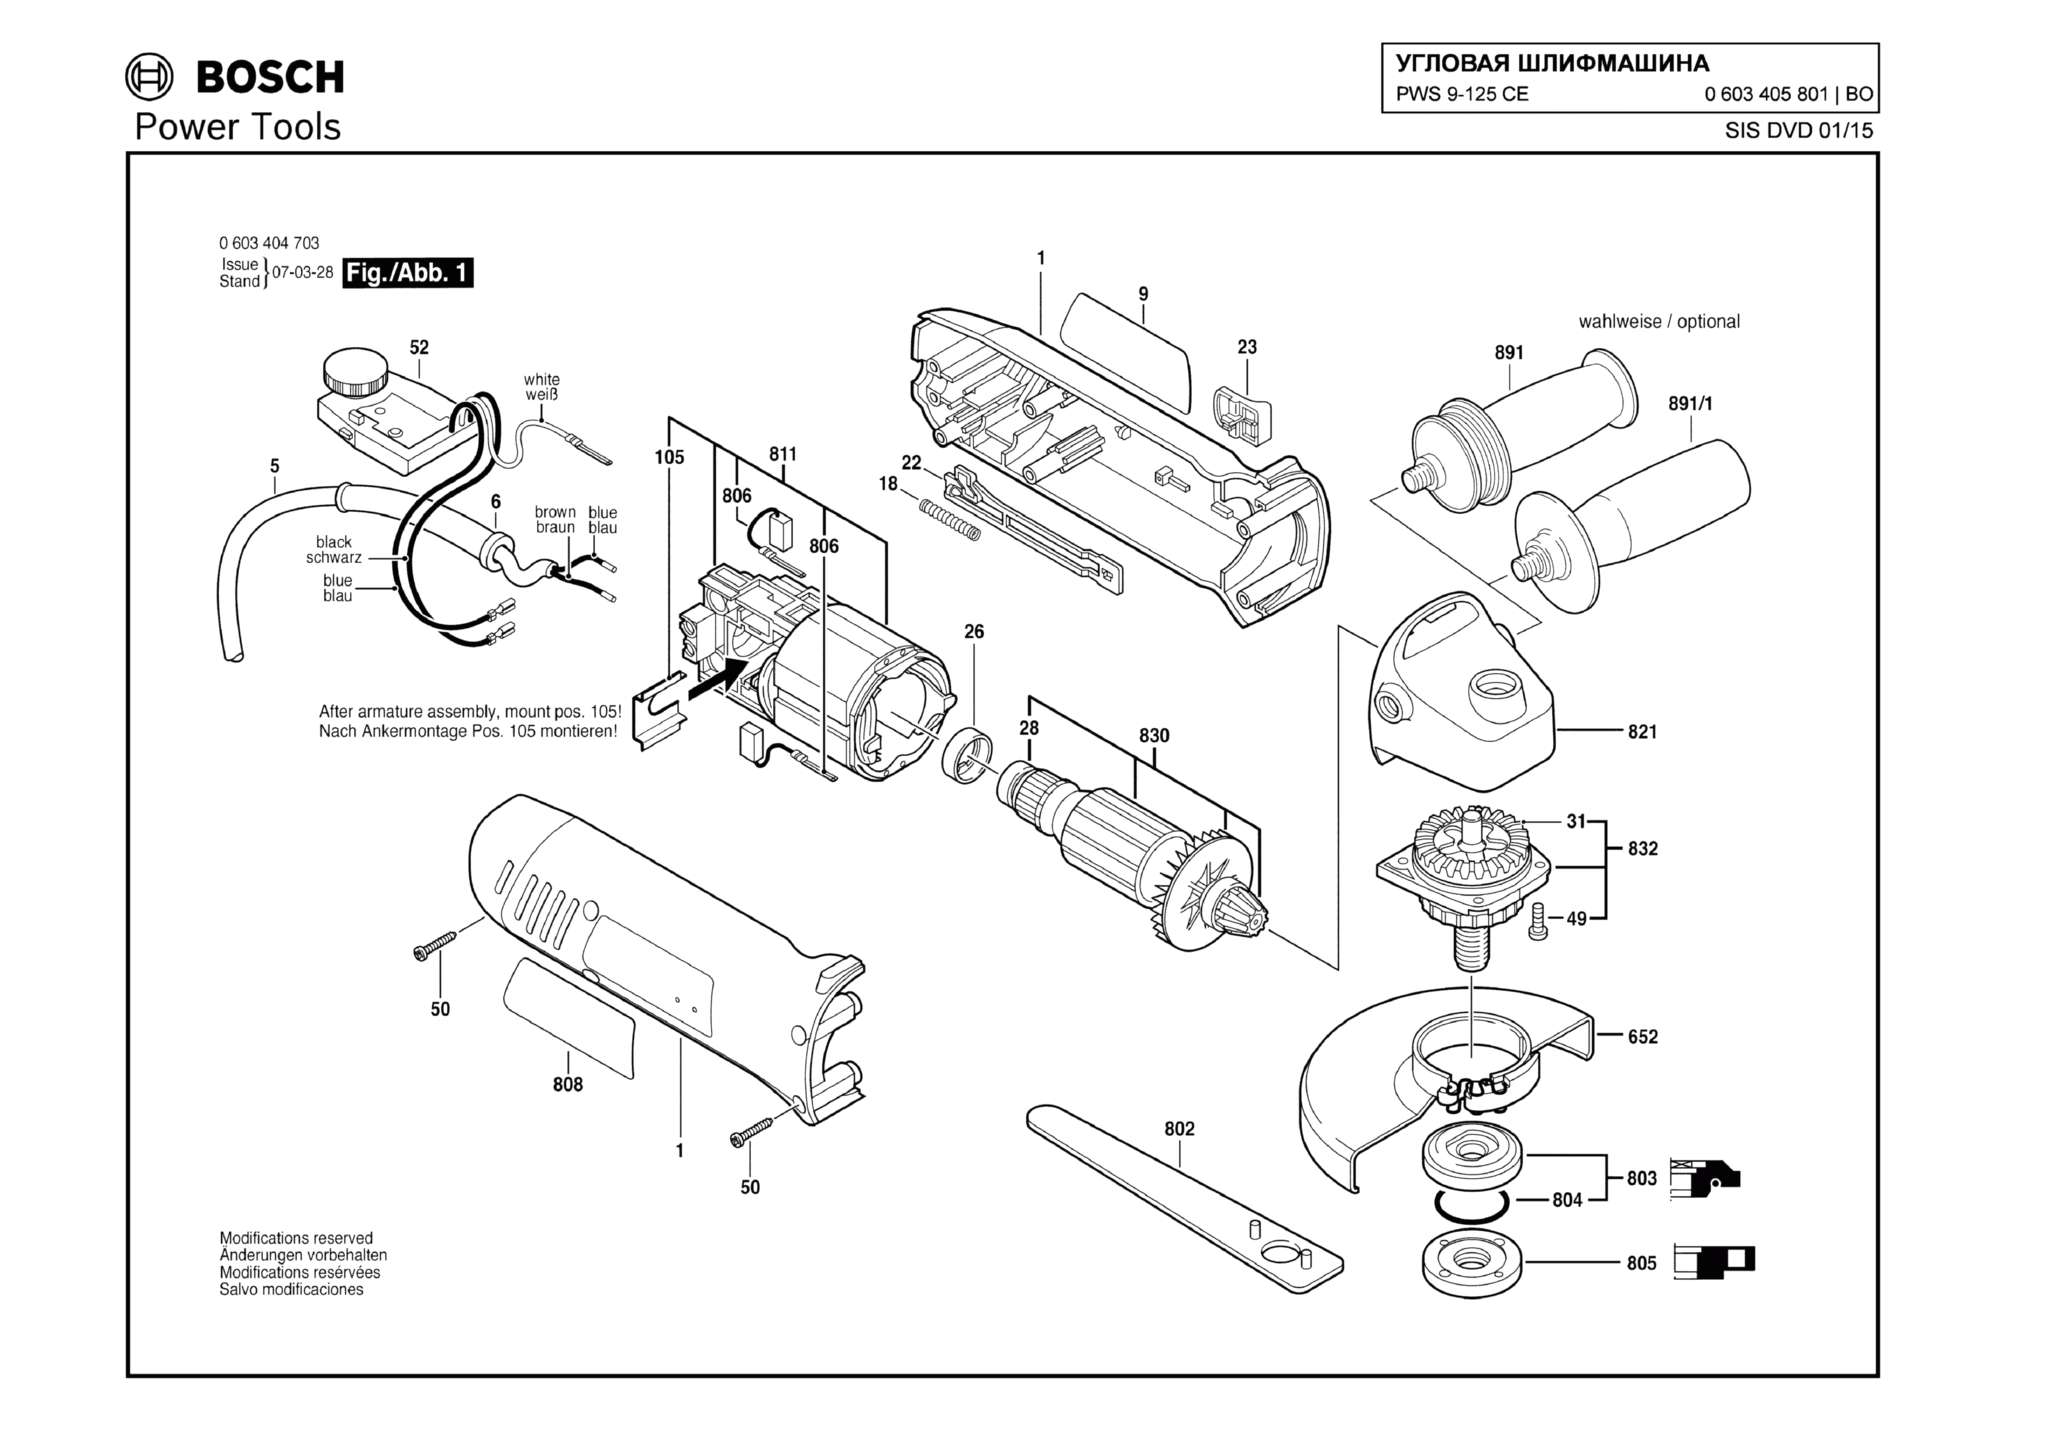 Запчасти, схема и деталировка Bosch PWS 9-125 CE (ТИП 0603405801)